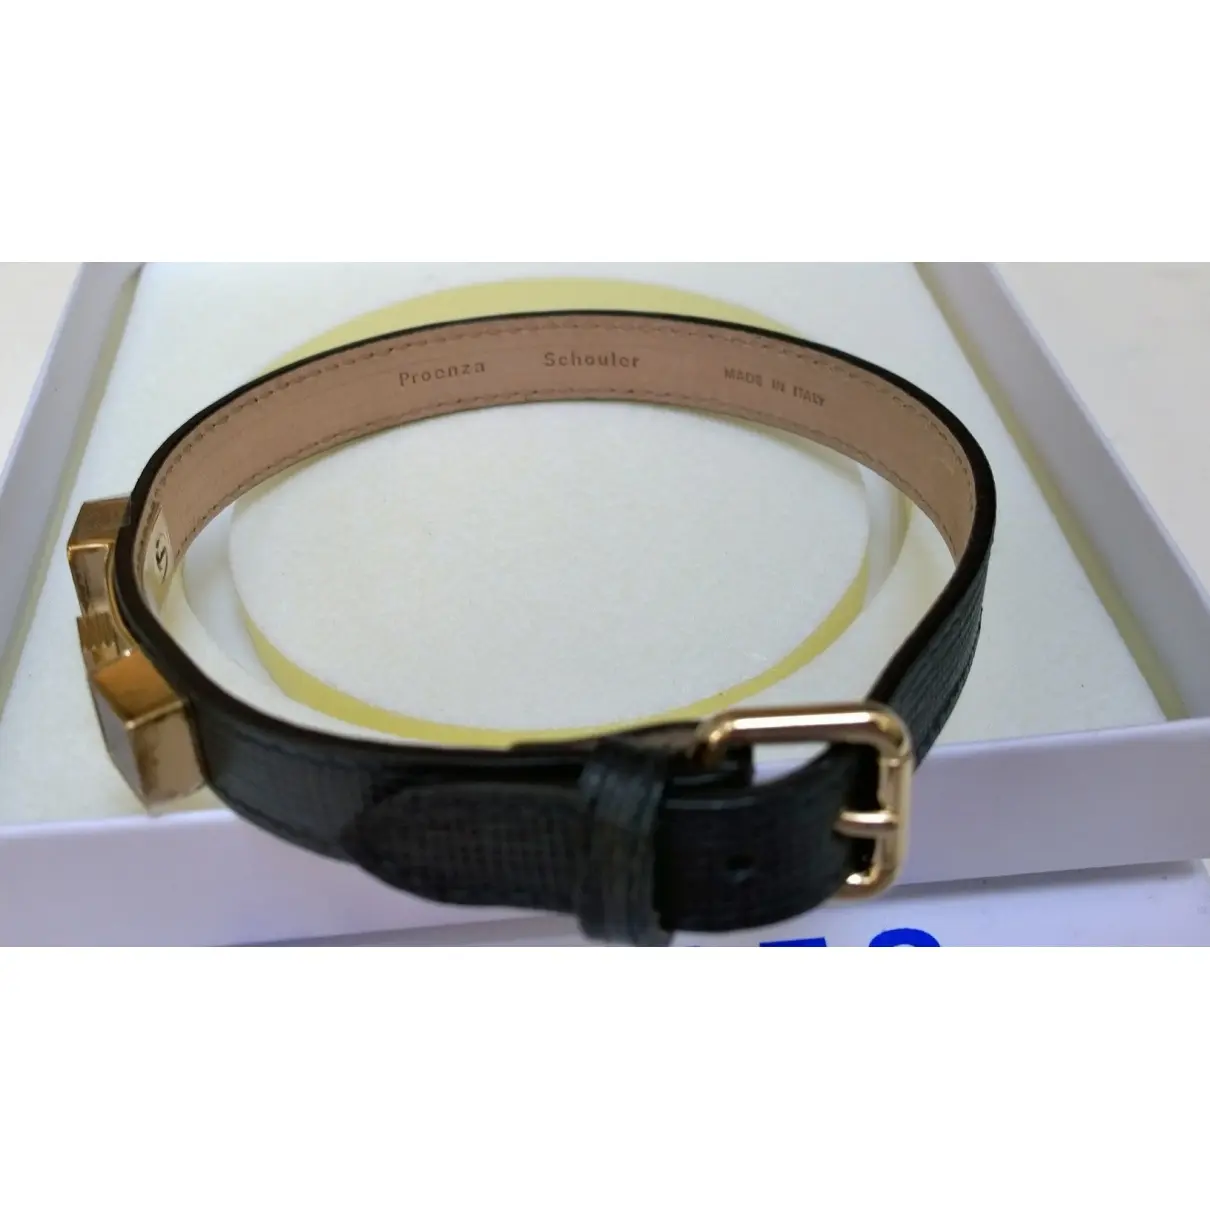 Buy Proenza Schouler Leather bracelet online